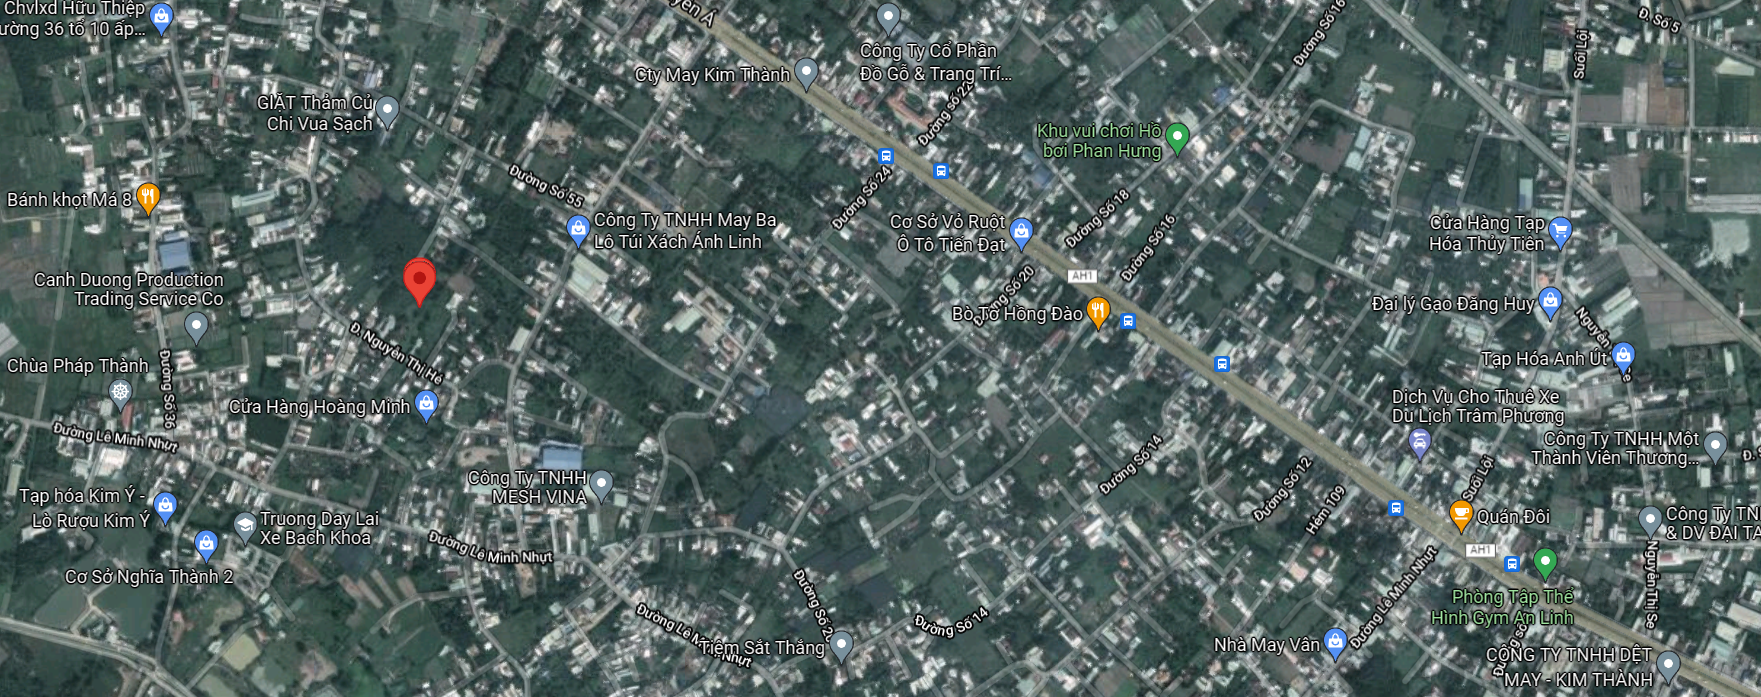 Bán  đất thổ cư 385.6m² tại đường 32, Xã Tân Thông Hội, Huyện Củ Chi, TP. Hồ Chí Minh giá 2.7 tỷ